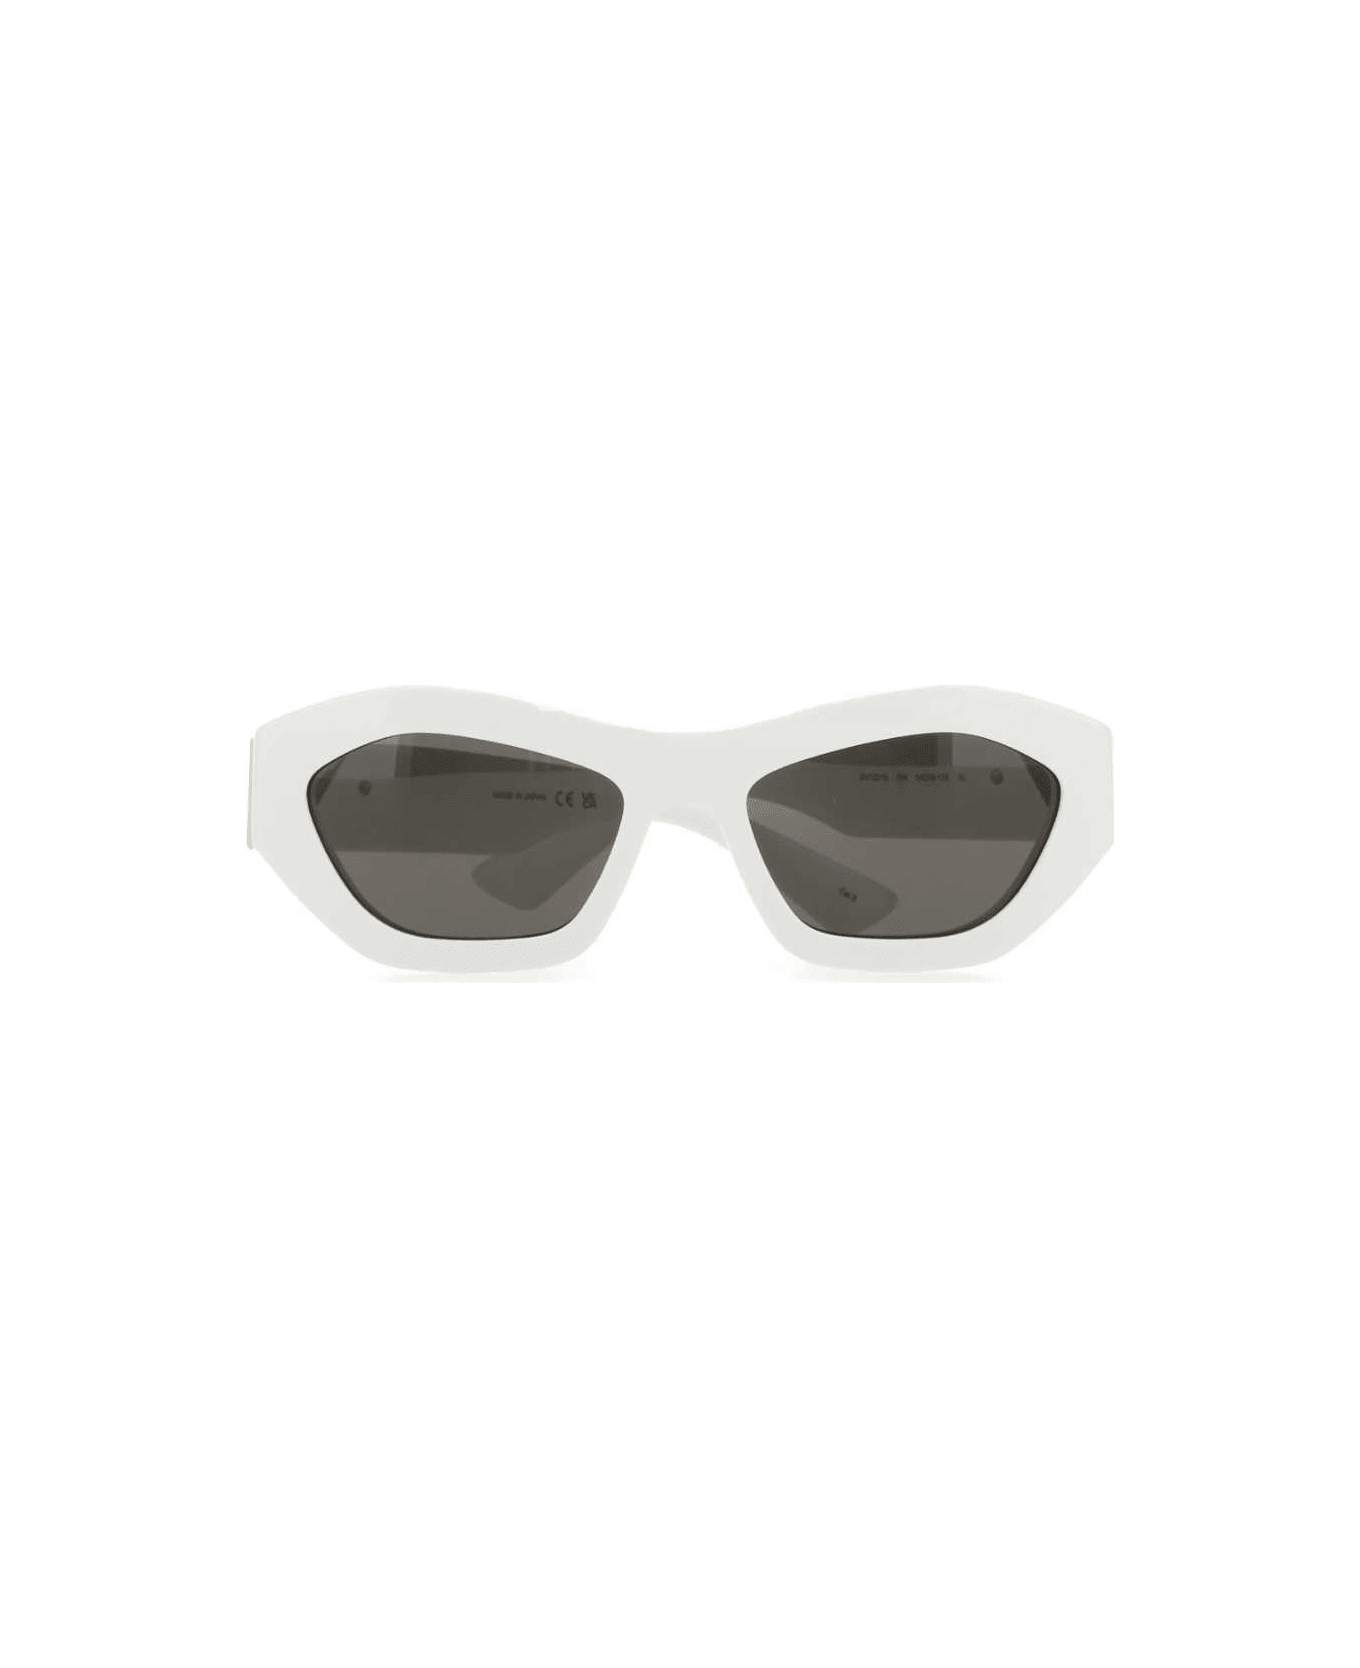 Bottega Veneta White Acetate Angle Sunglasses - Multicolor